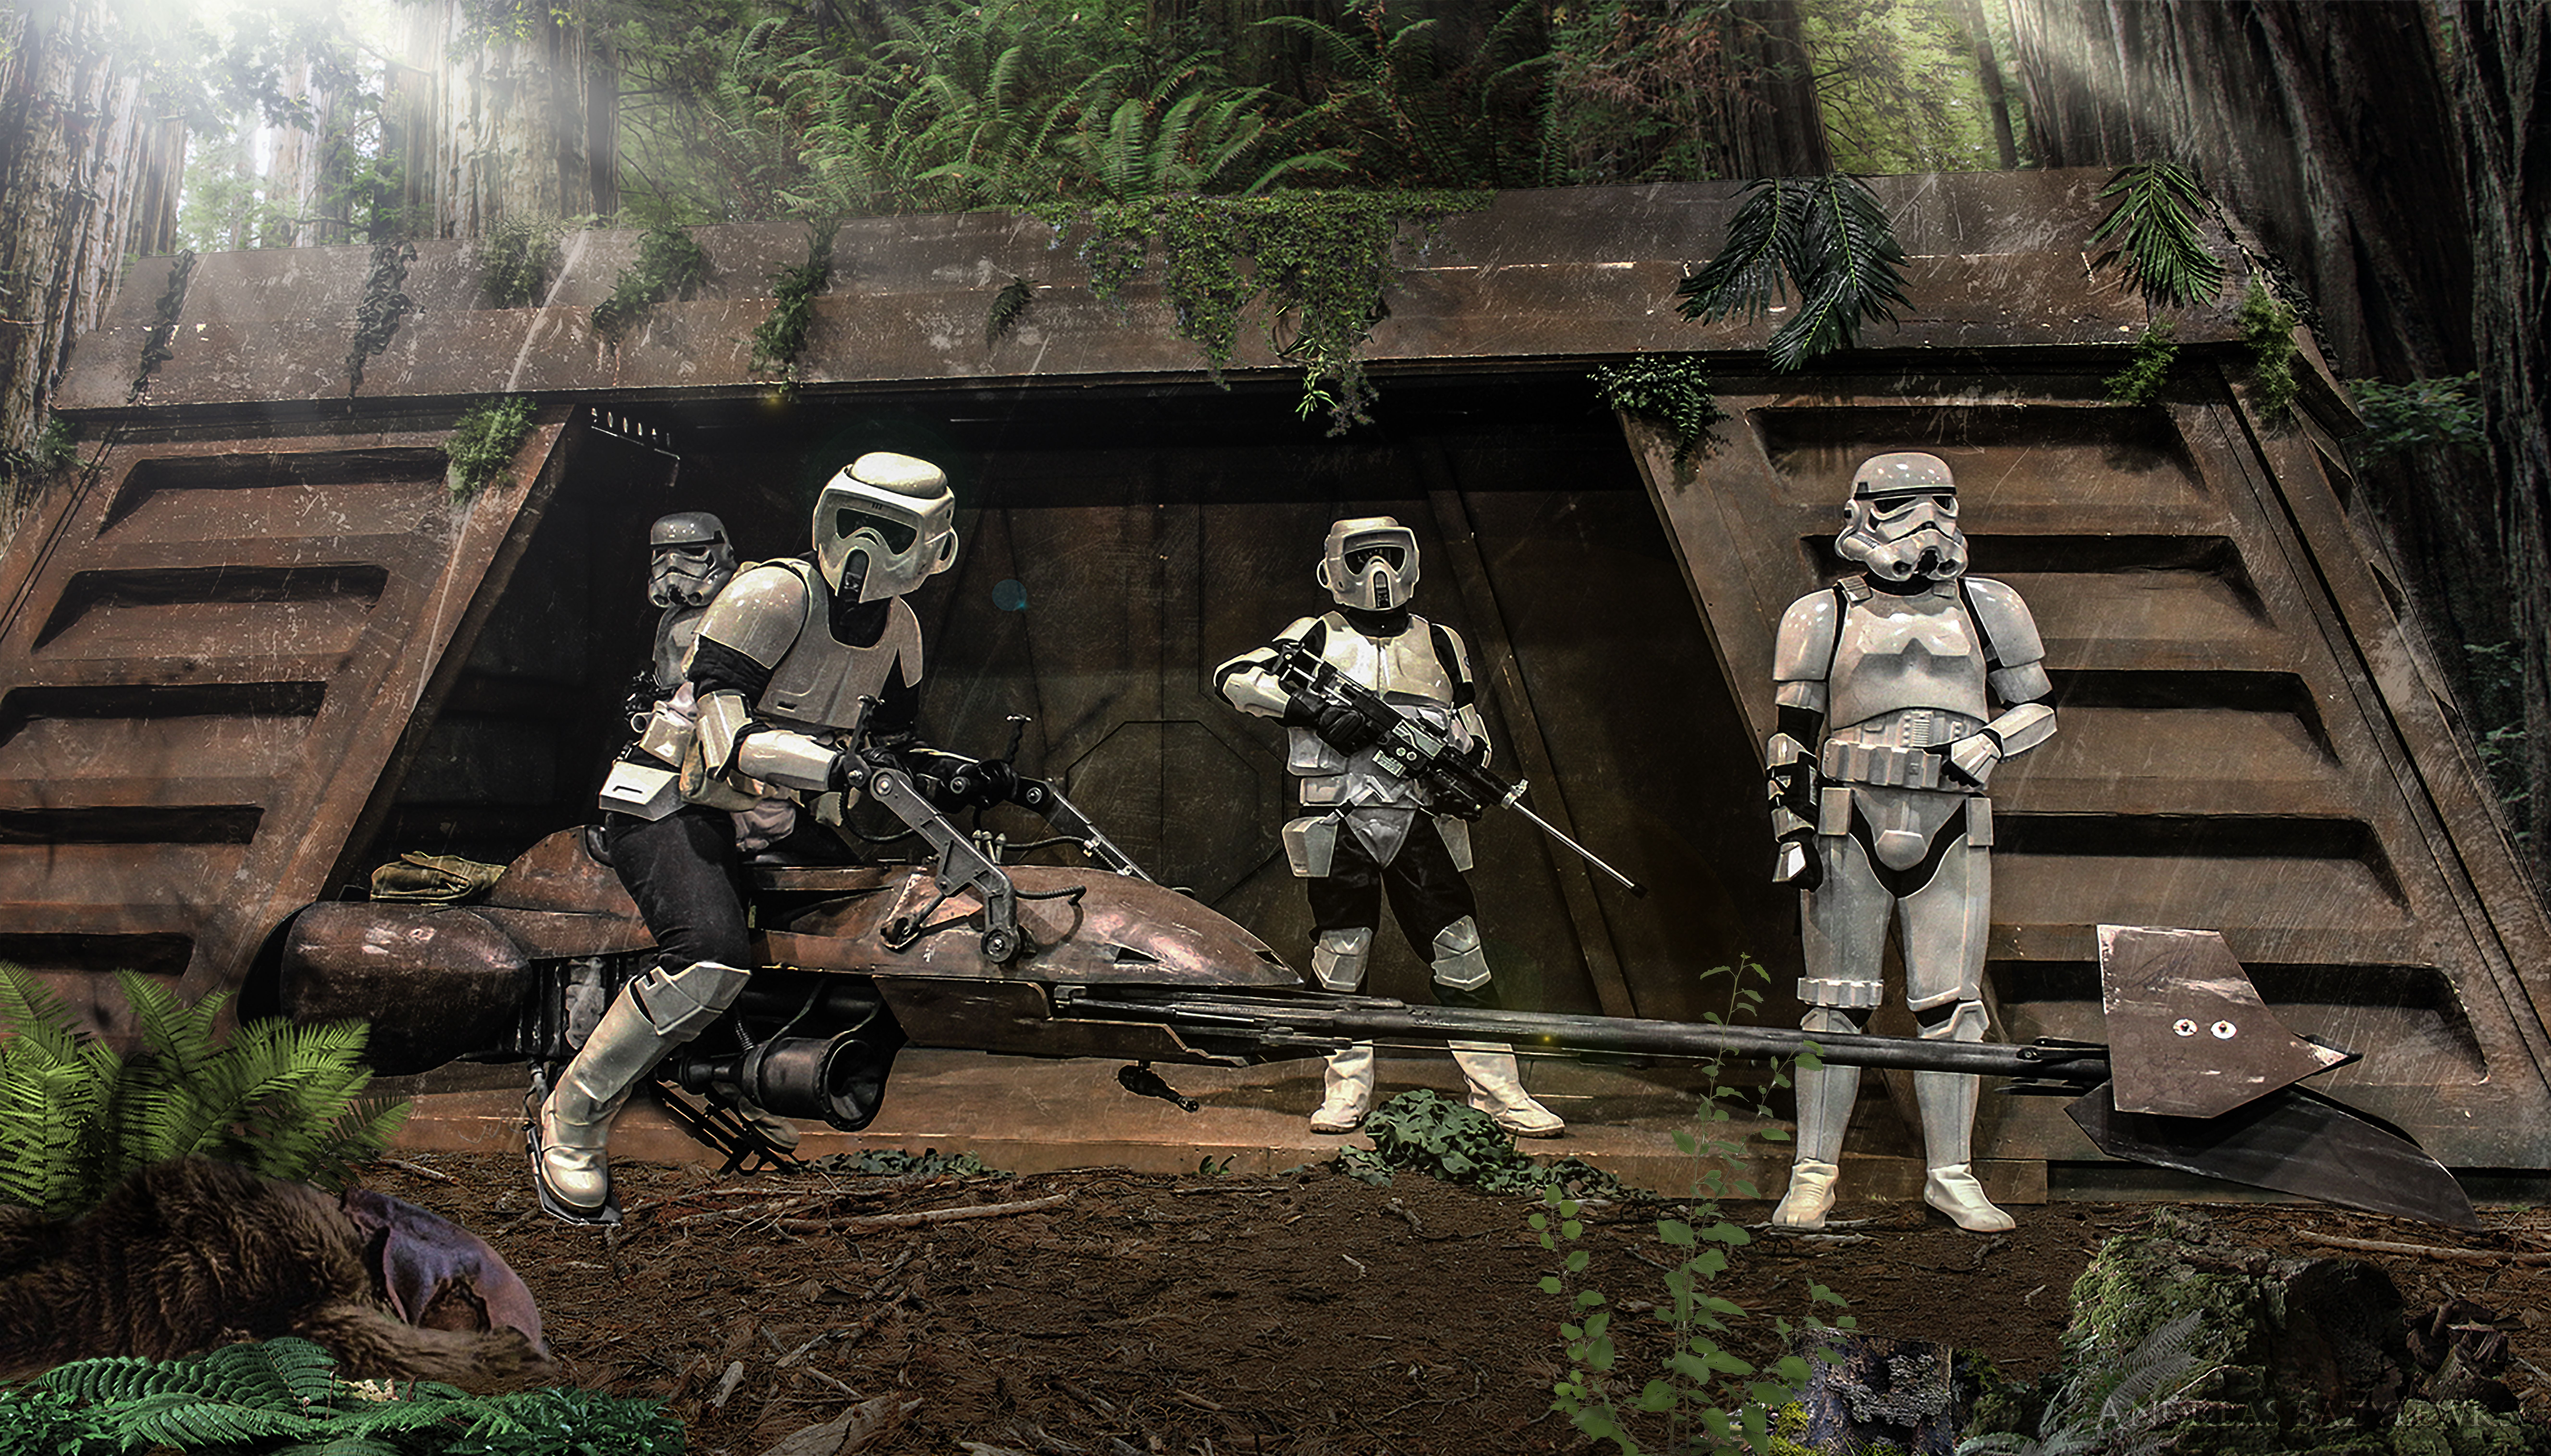 Star Wars Episode VI: Return Of The Jedi Wallpaper, Picture, Image